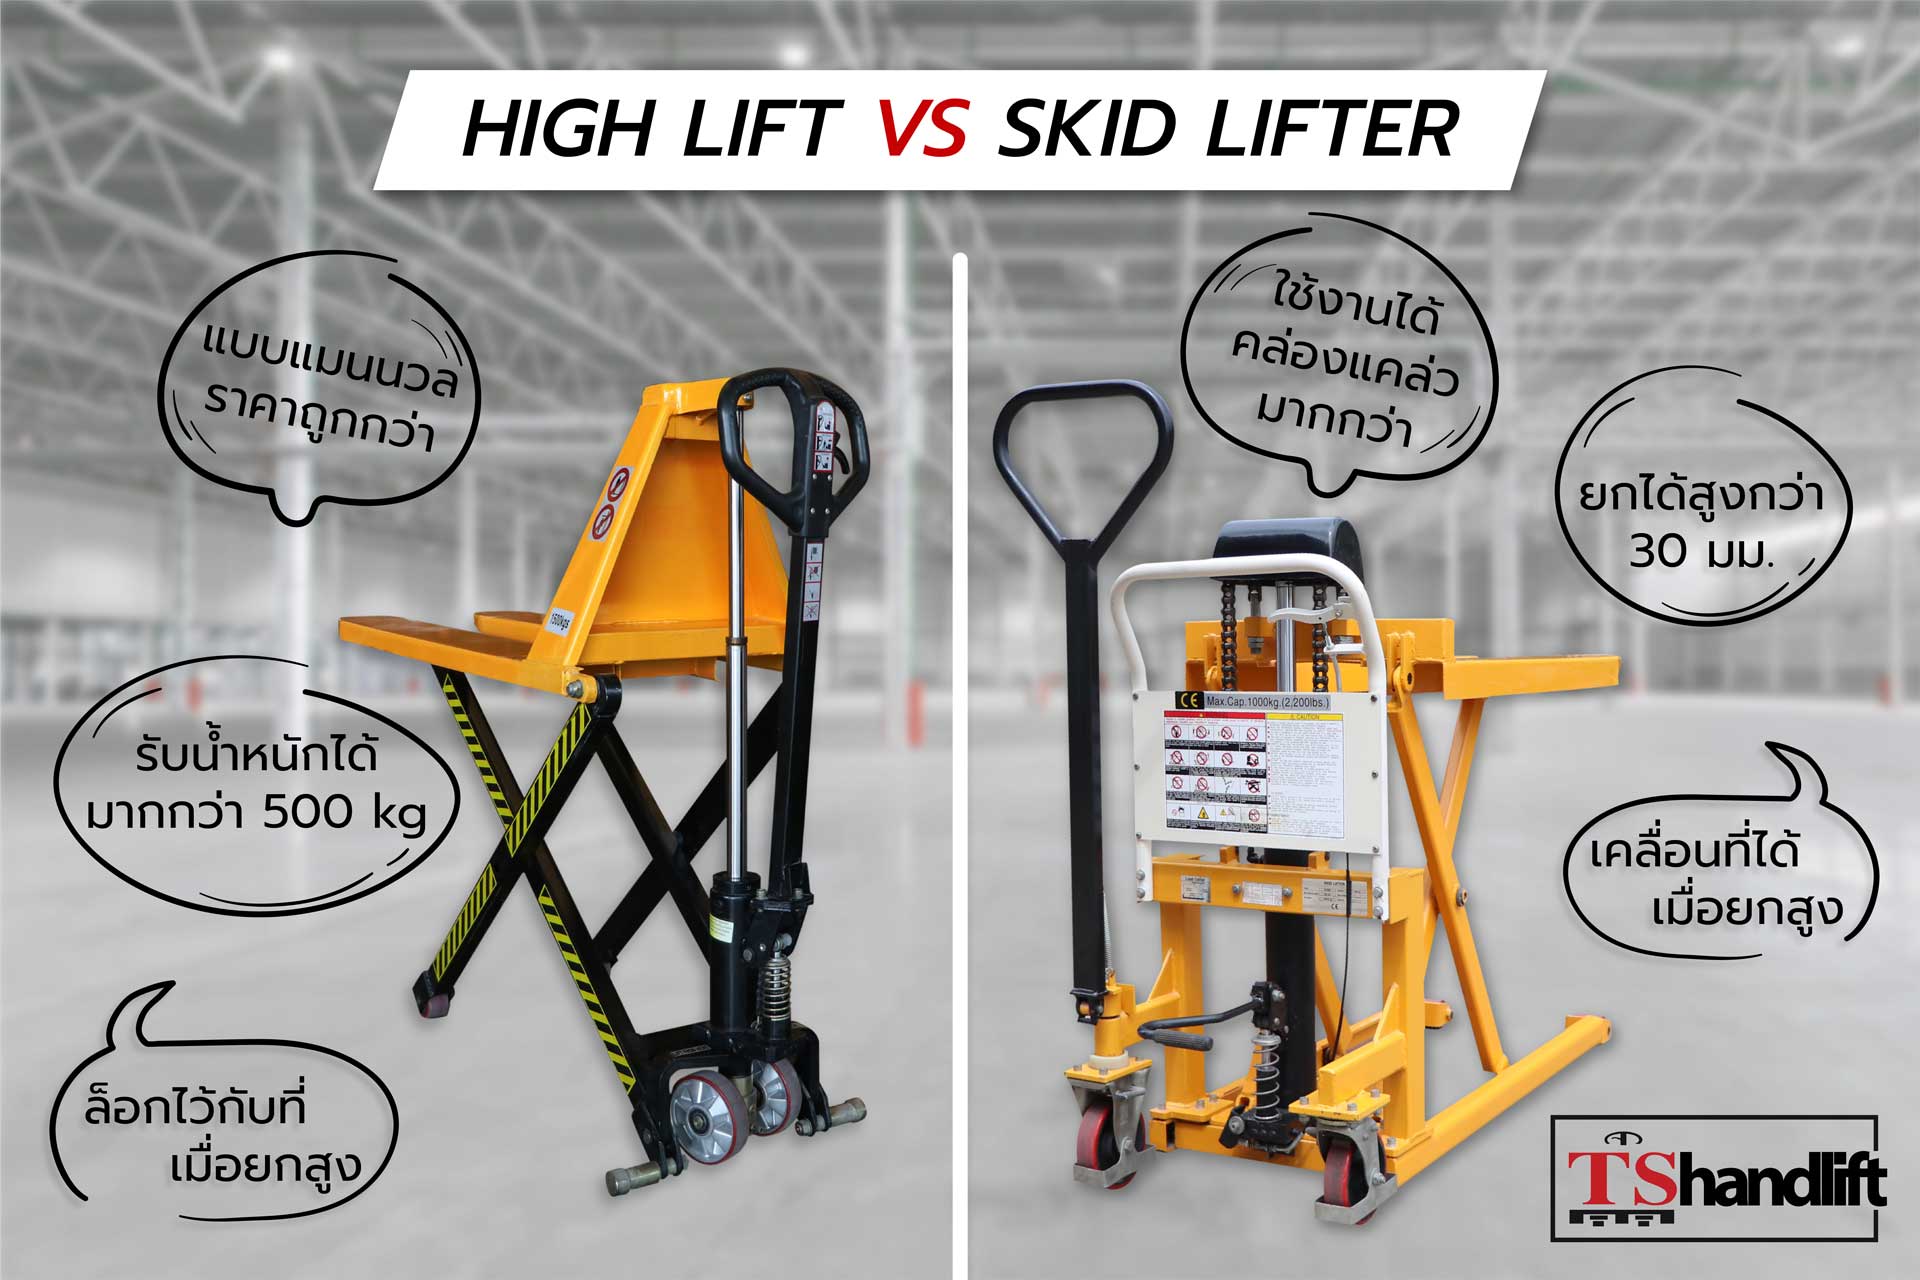 สรุปเปรียบเทียบ hight lift กับ skid lifter